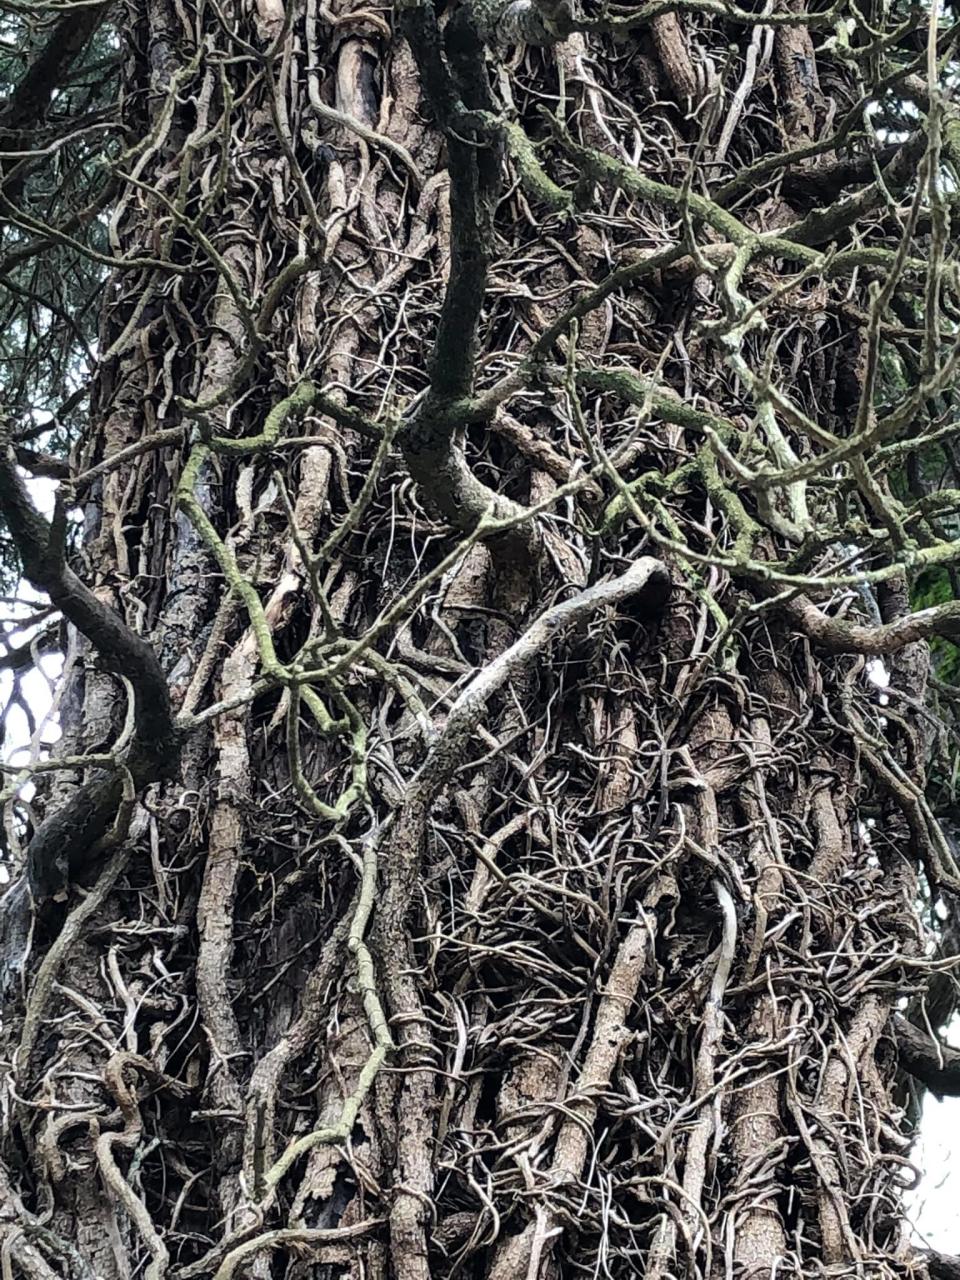 Creepy vines on a tree at Blandford Cemetery in Petersburg.